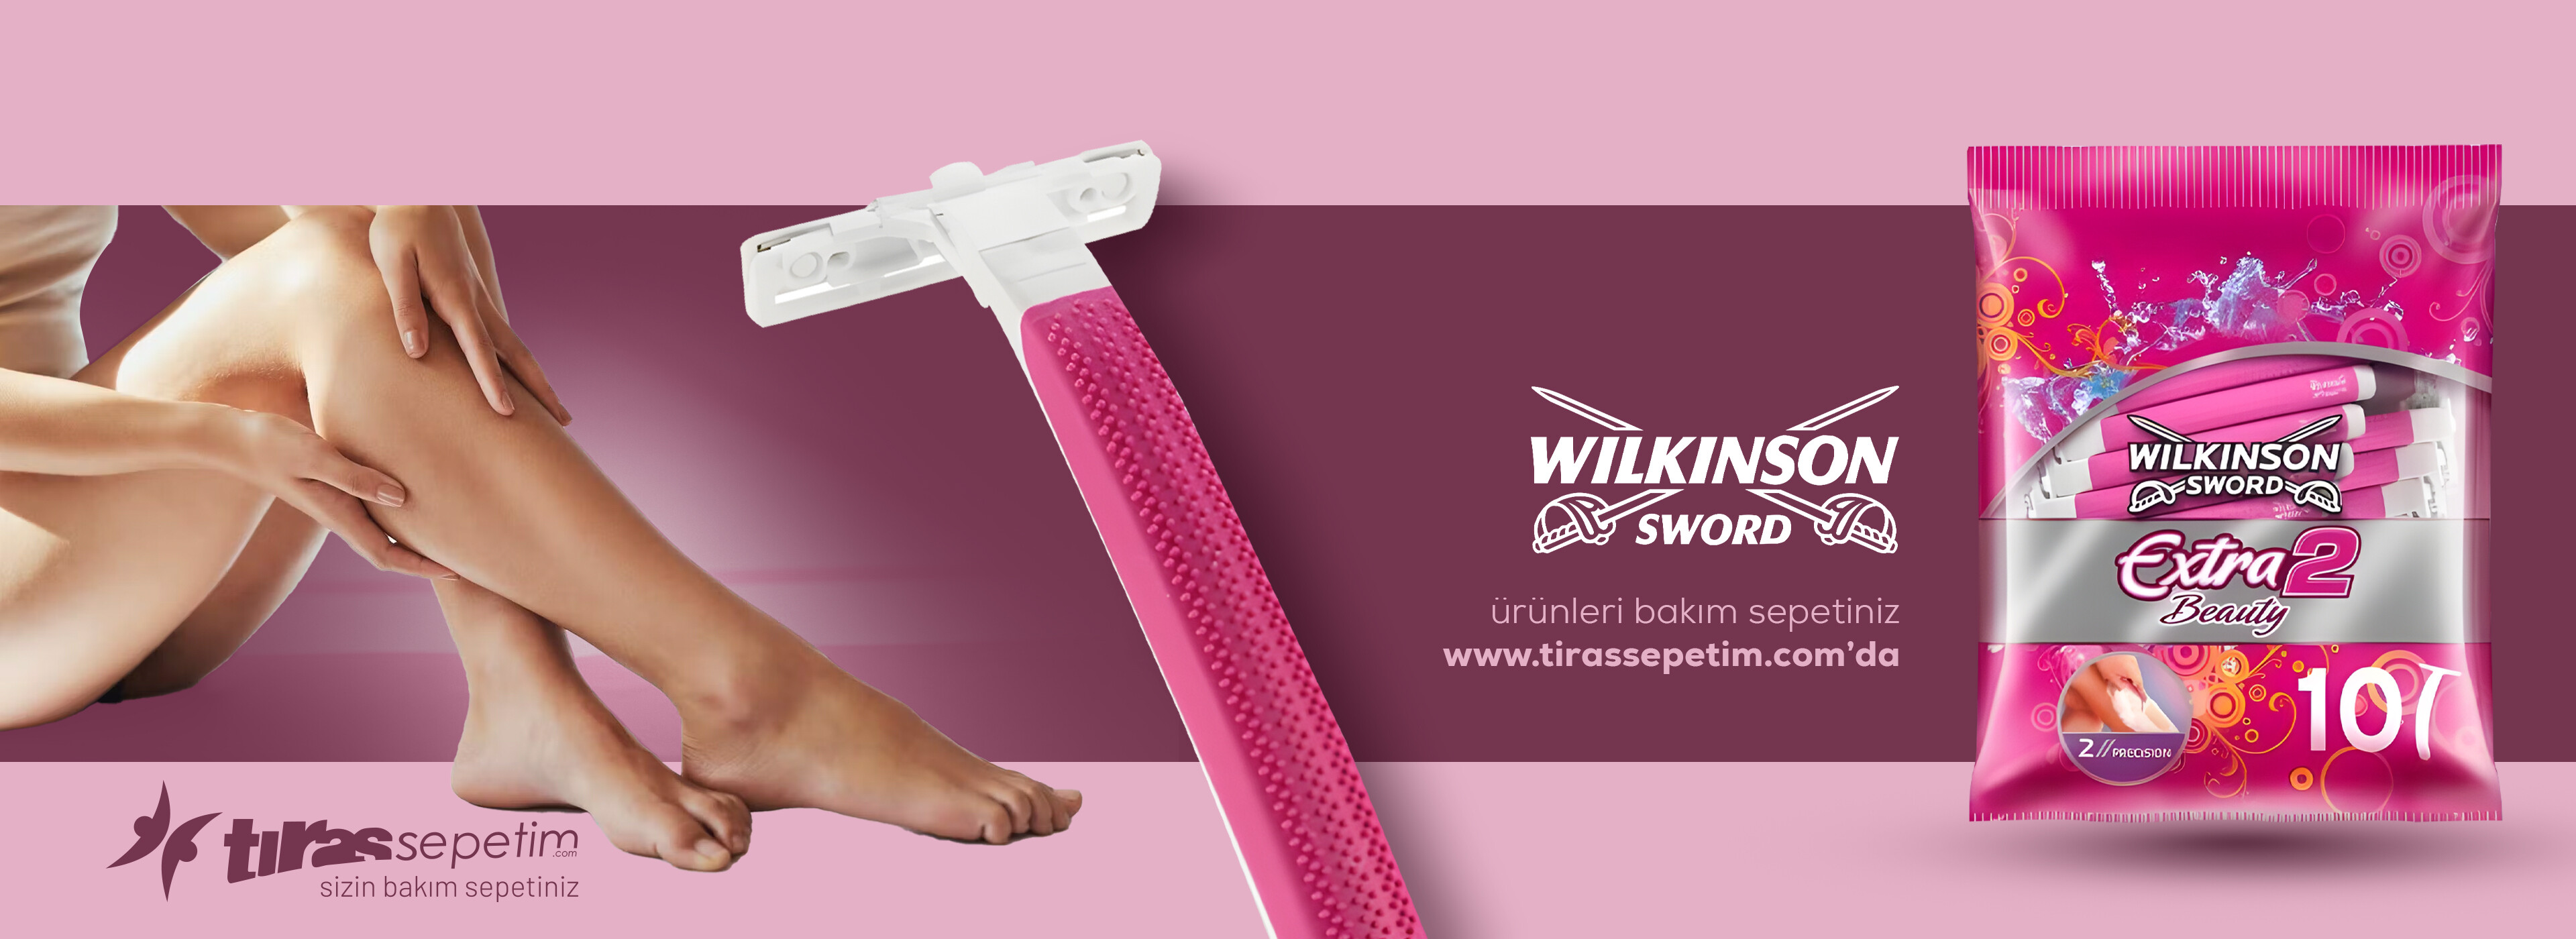 Wilkinson Sword Extra 2 kadın tıraş bıçağı